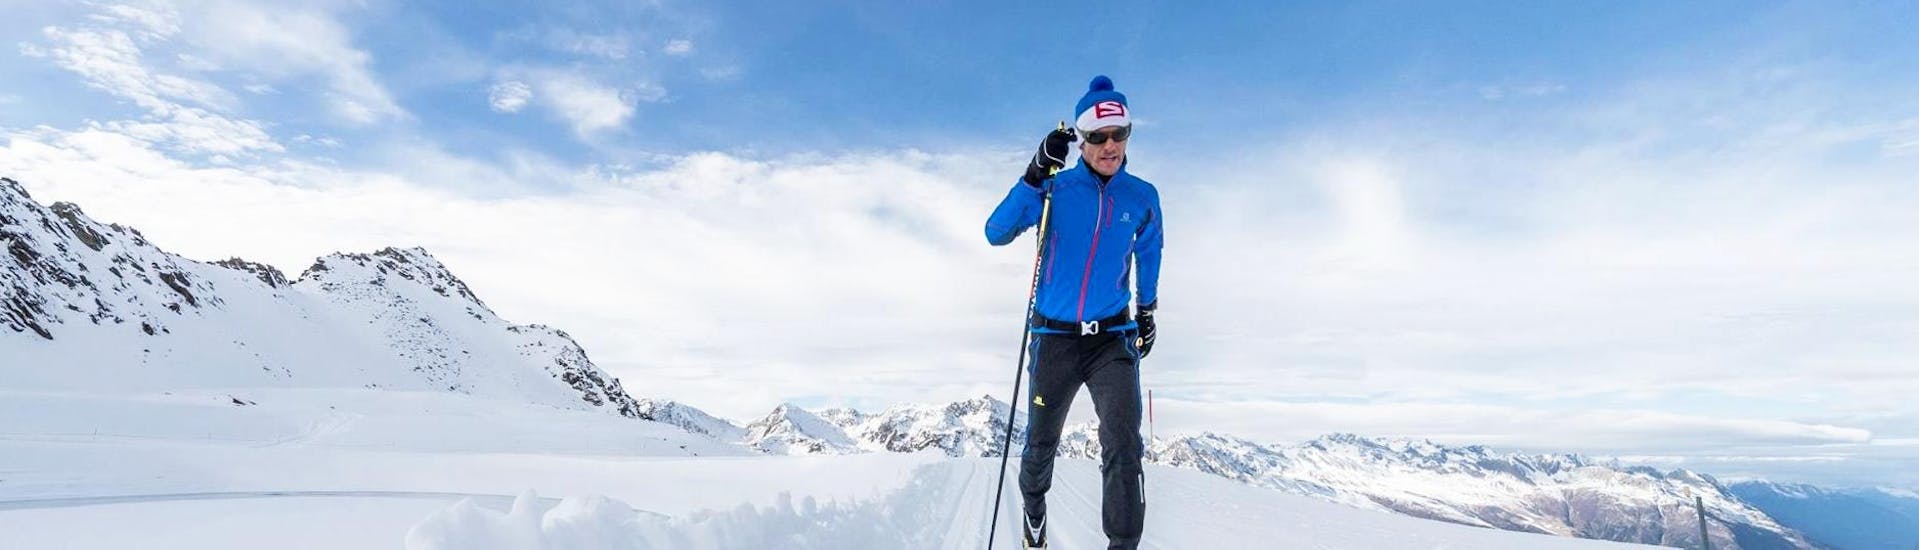 Ein Teilnehmer des privaten Langlaufkurses für alle Levels der Schischule Hochgurgl gleitet durch die wunderschöne Winterlandschaft des Skigebiets Obergurgl-Hochgurgl.